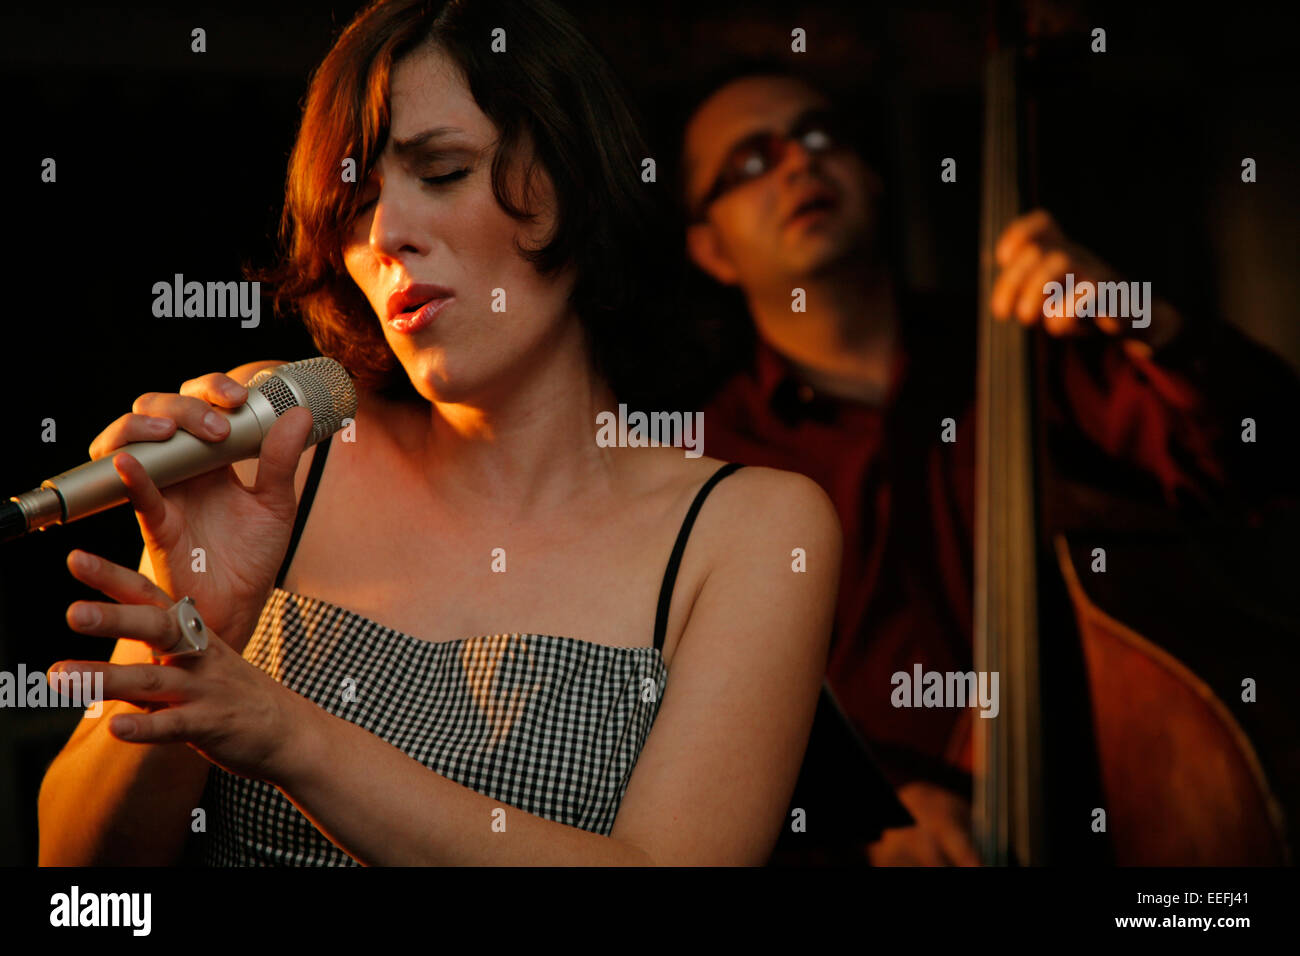 Jazz singer singing Stock Photo